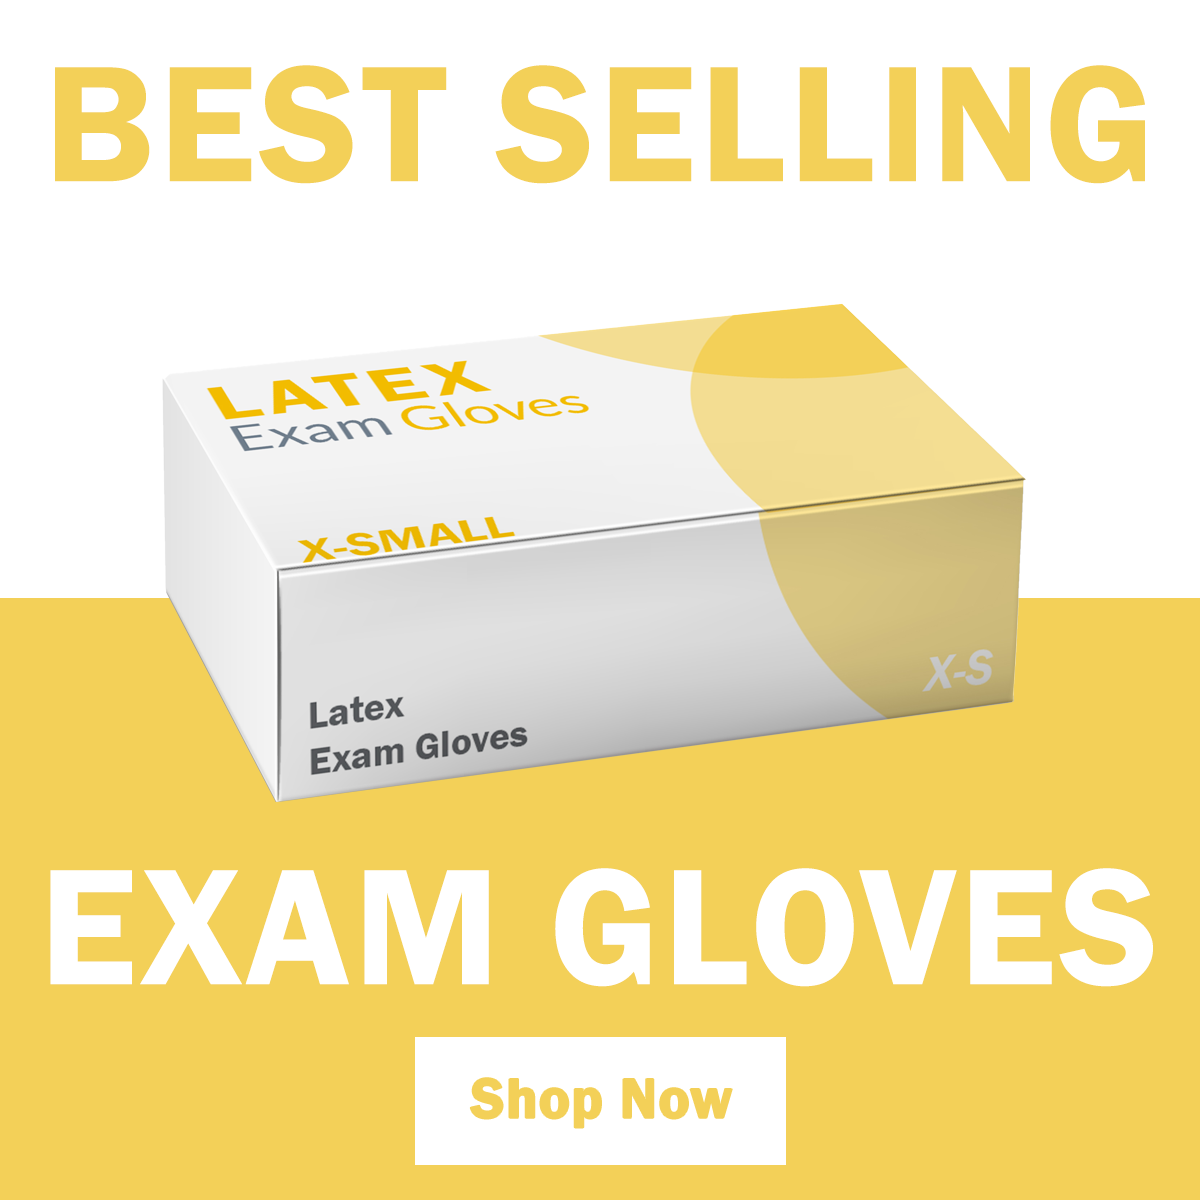 Best Selling Exam Gloves